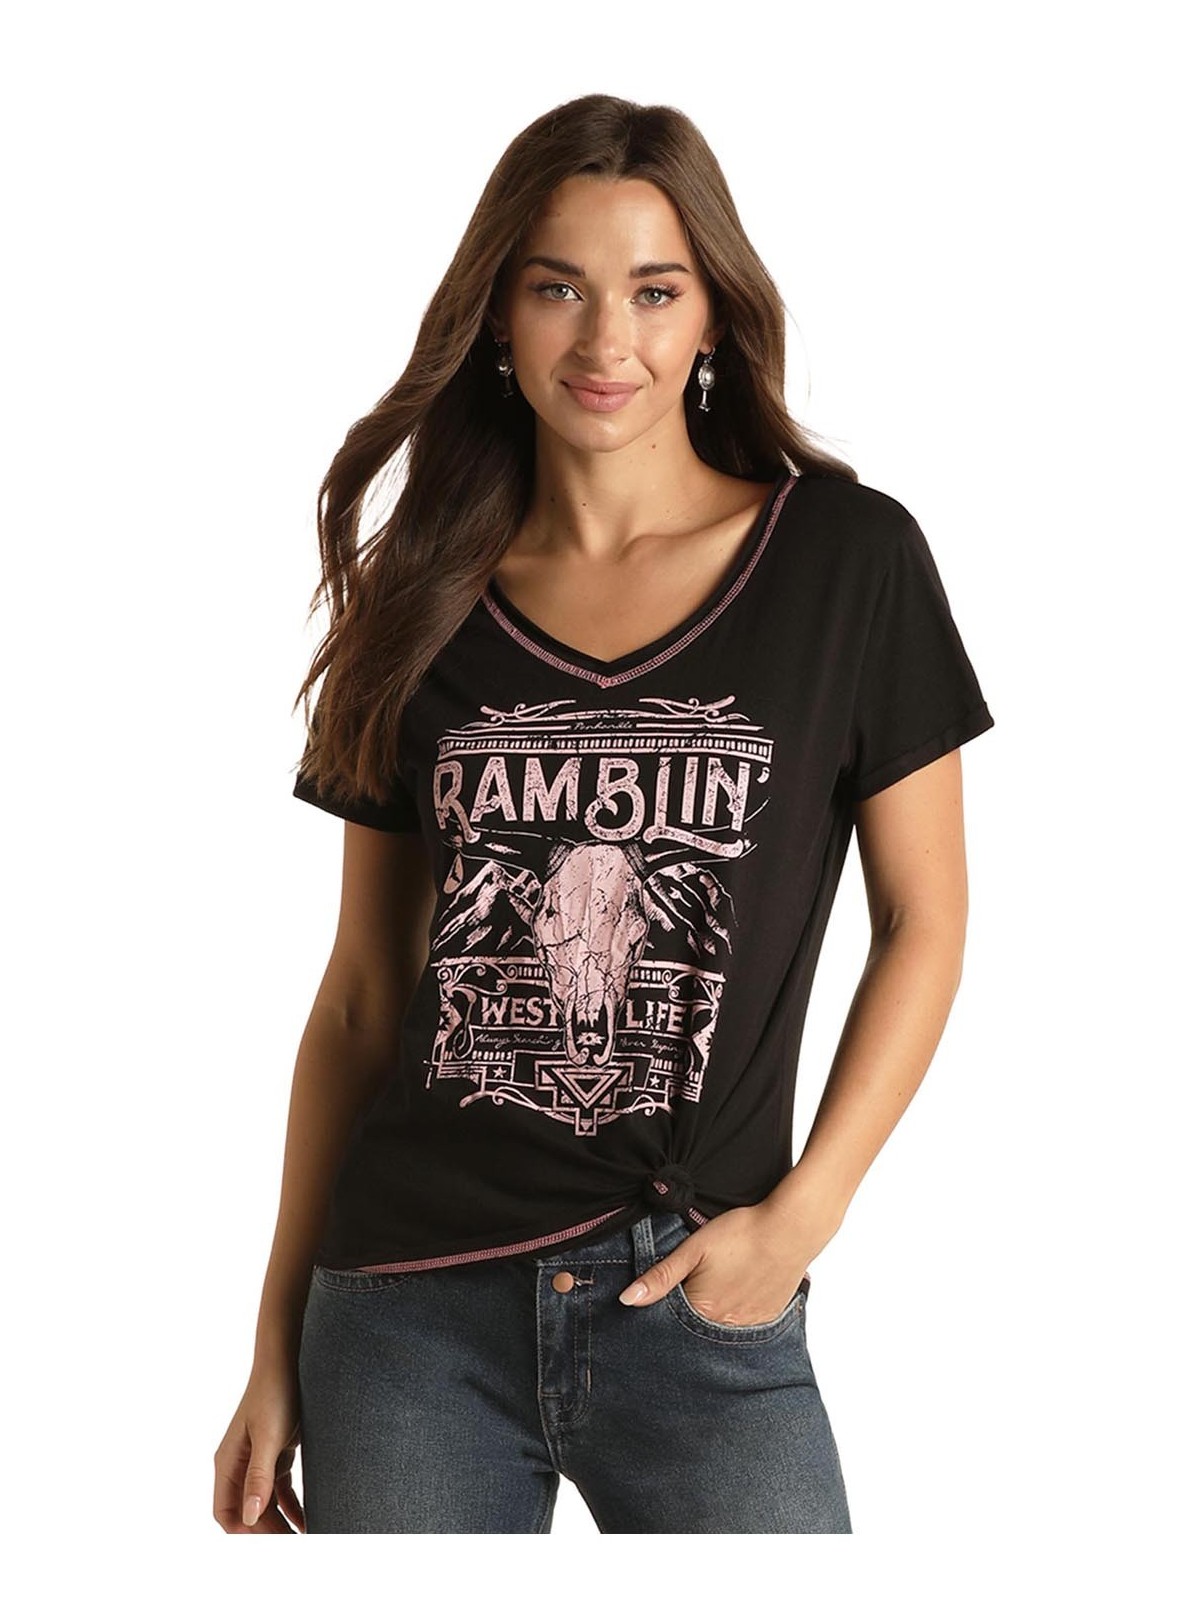 Shirt "Ramblin"